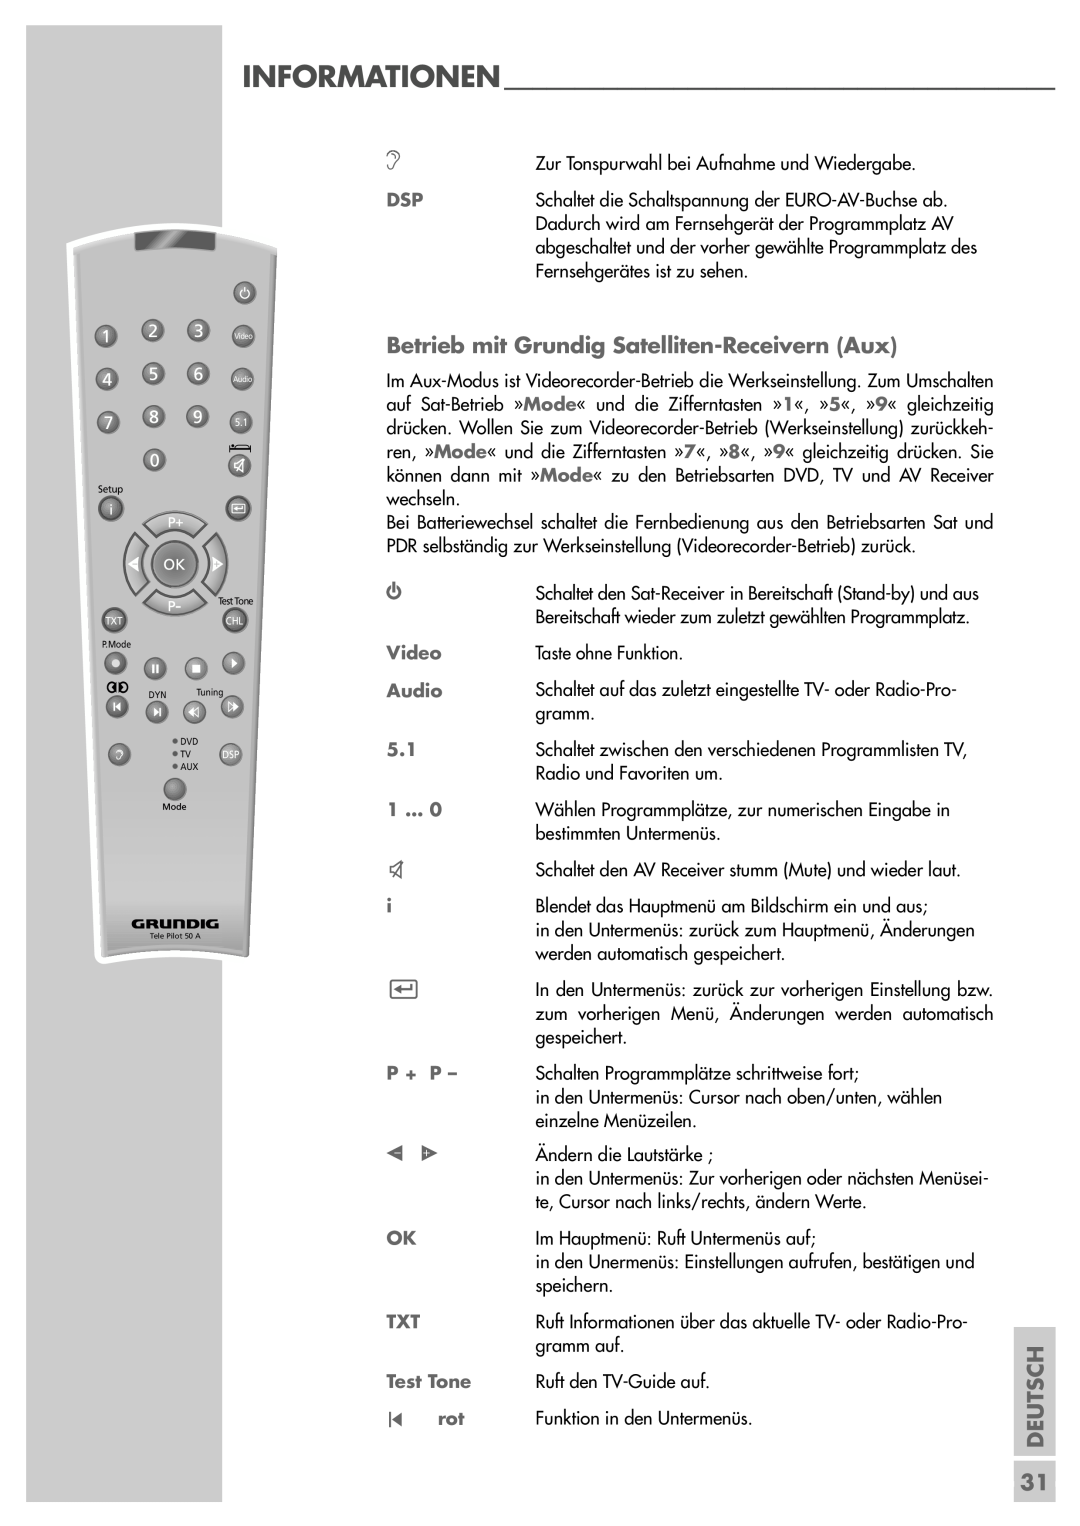 Grundig AVR 5200 DD manual Betrieb mit Grundig Satelliten-ReceivernAux, Deutsch 